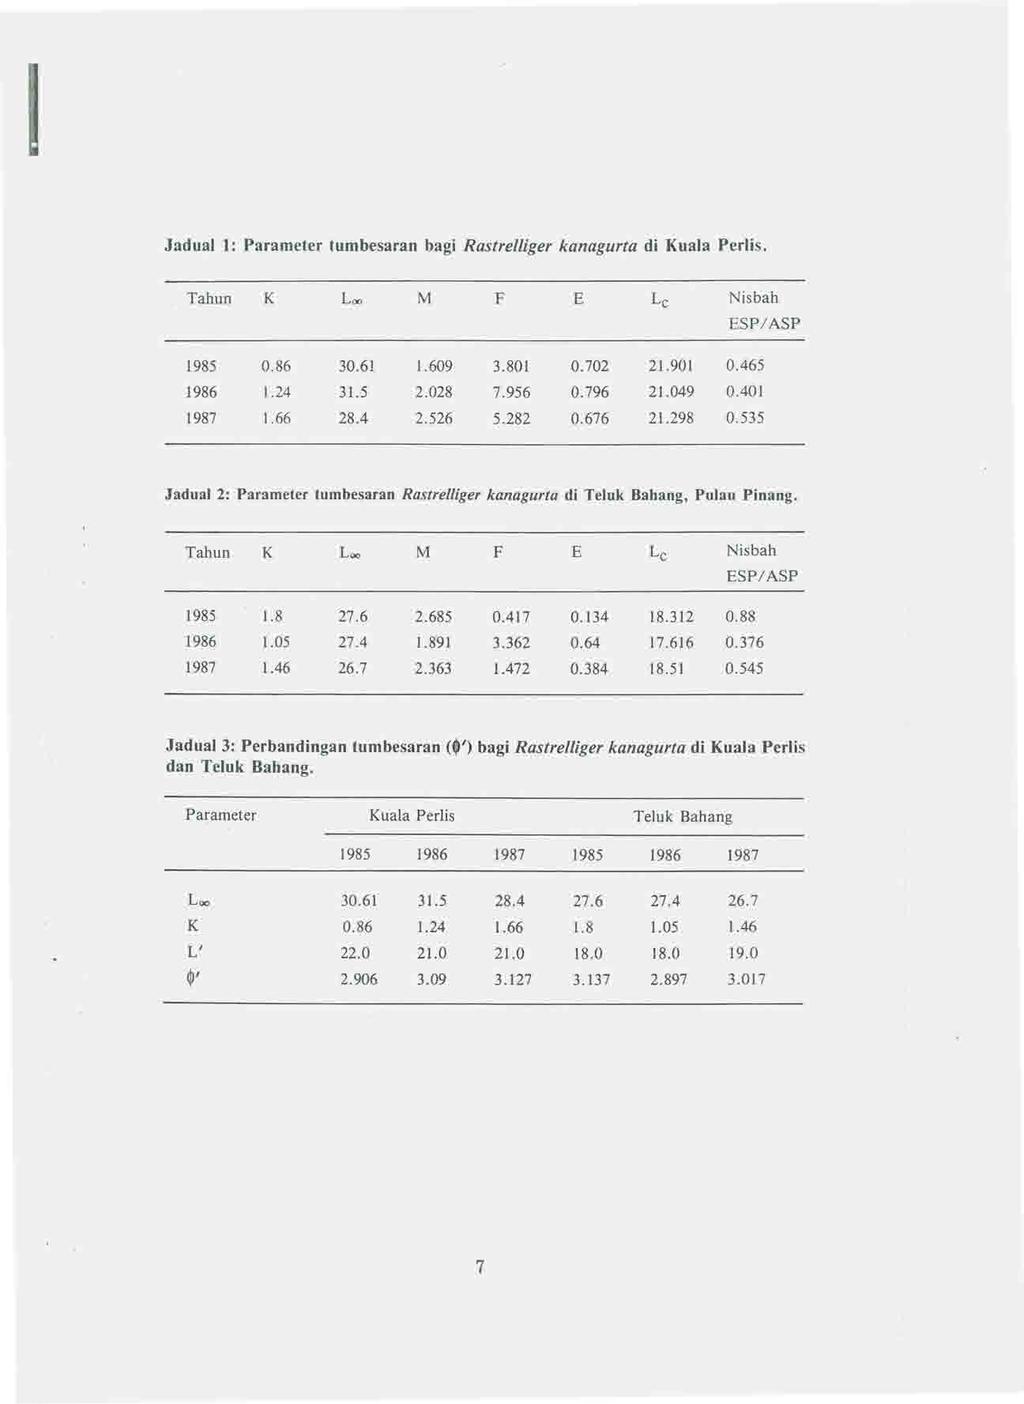 Jadual 1: Parameter tumbesaran bagi Rastrelliger kanagurta di Kuala Perlis. Tahun K Lao M F E Lc Nisbah ESP/ASP 1985 0.86 30.61 1.609 3.801 0.702 21.901 0.465 1986 1.24 31.5 2.028 7.956 0.796 21.